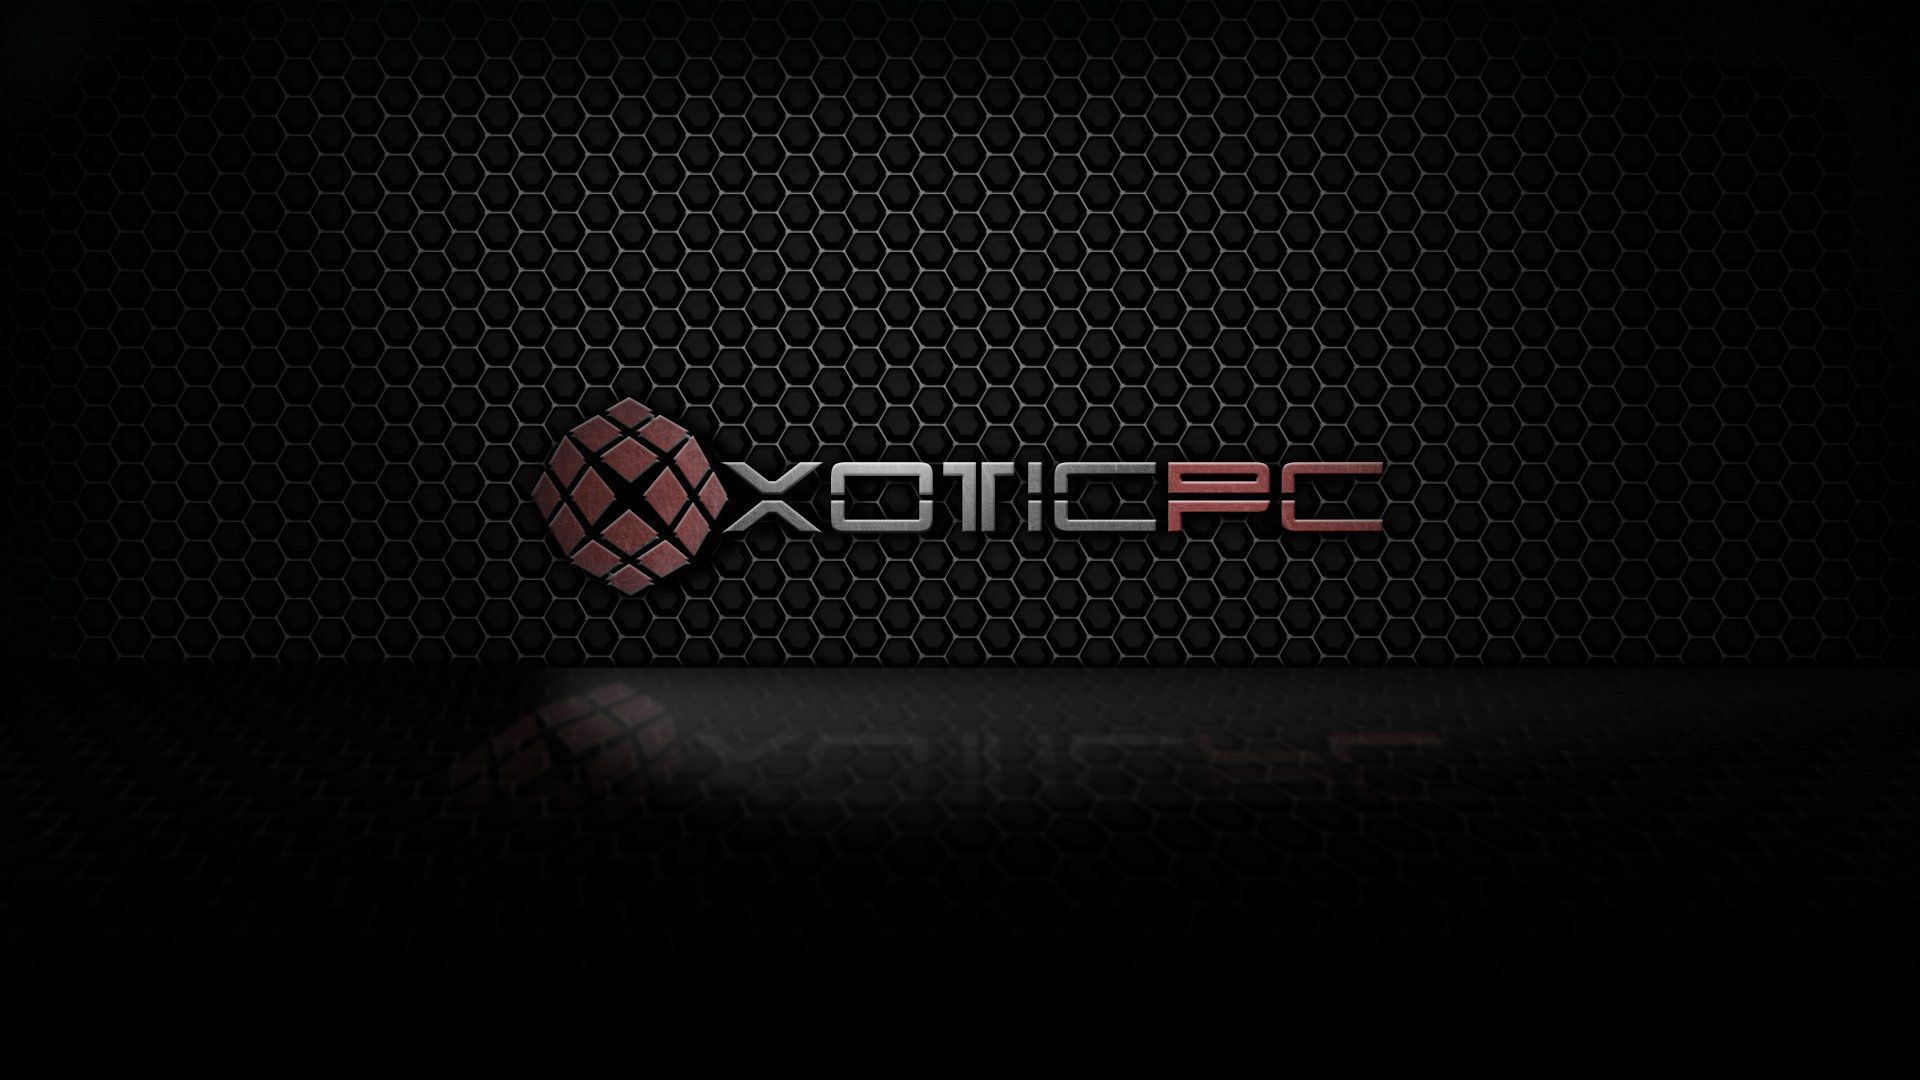 XOTIC-PC GAMING computer xotic wallpaper | 1920x1080 | 400950 ...